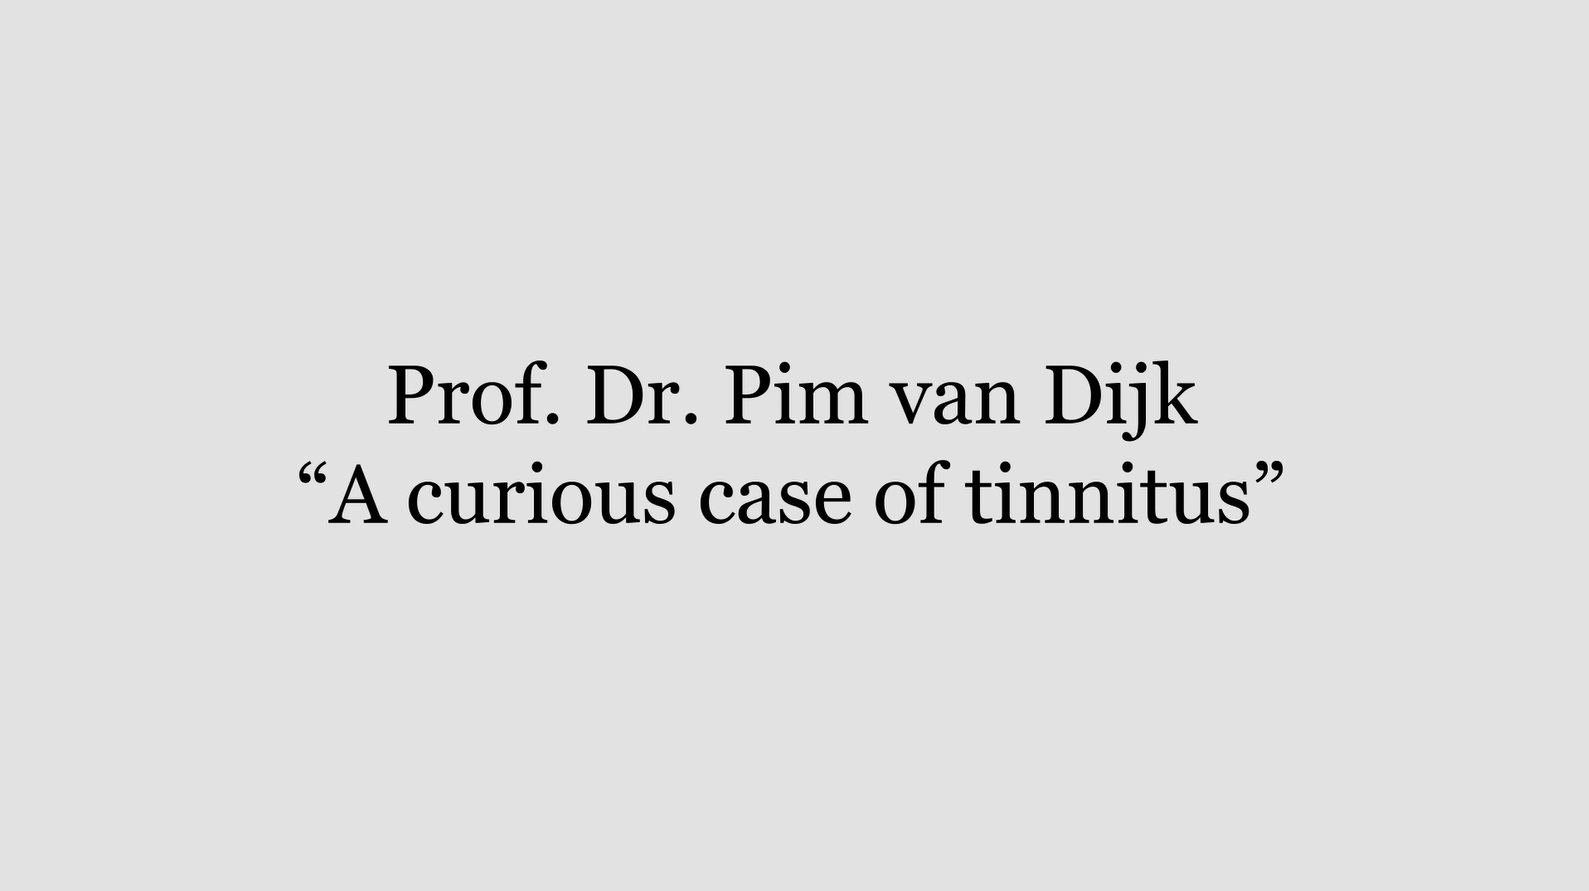 A curious case of tinnitus by Pim van Dijk